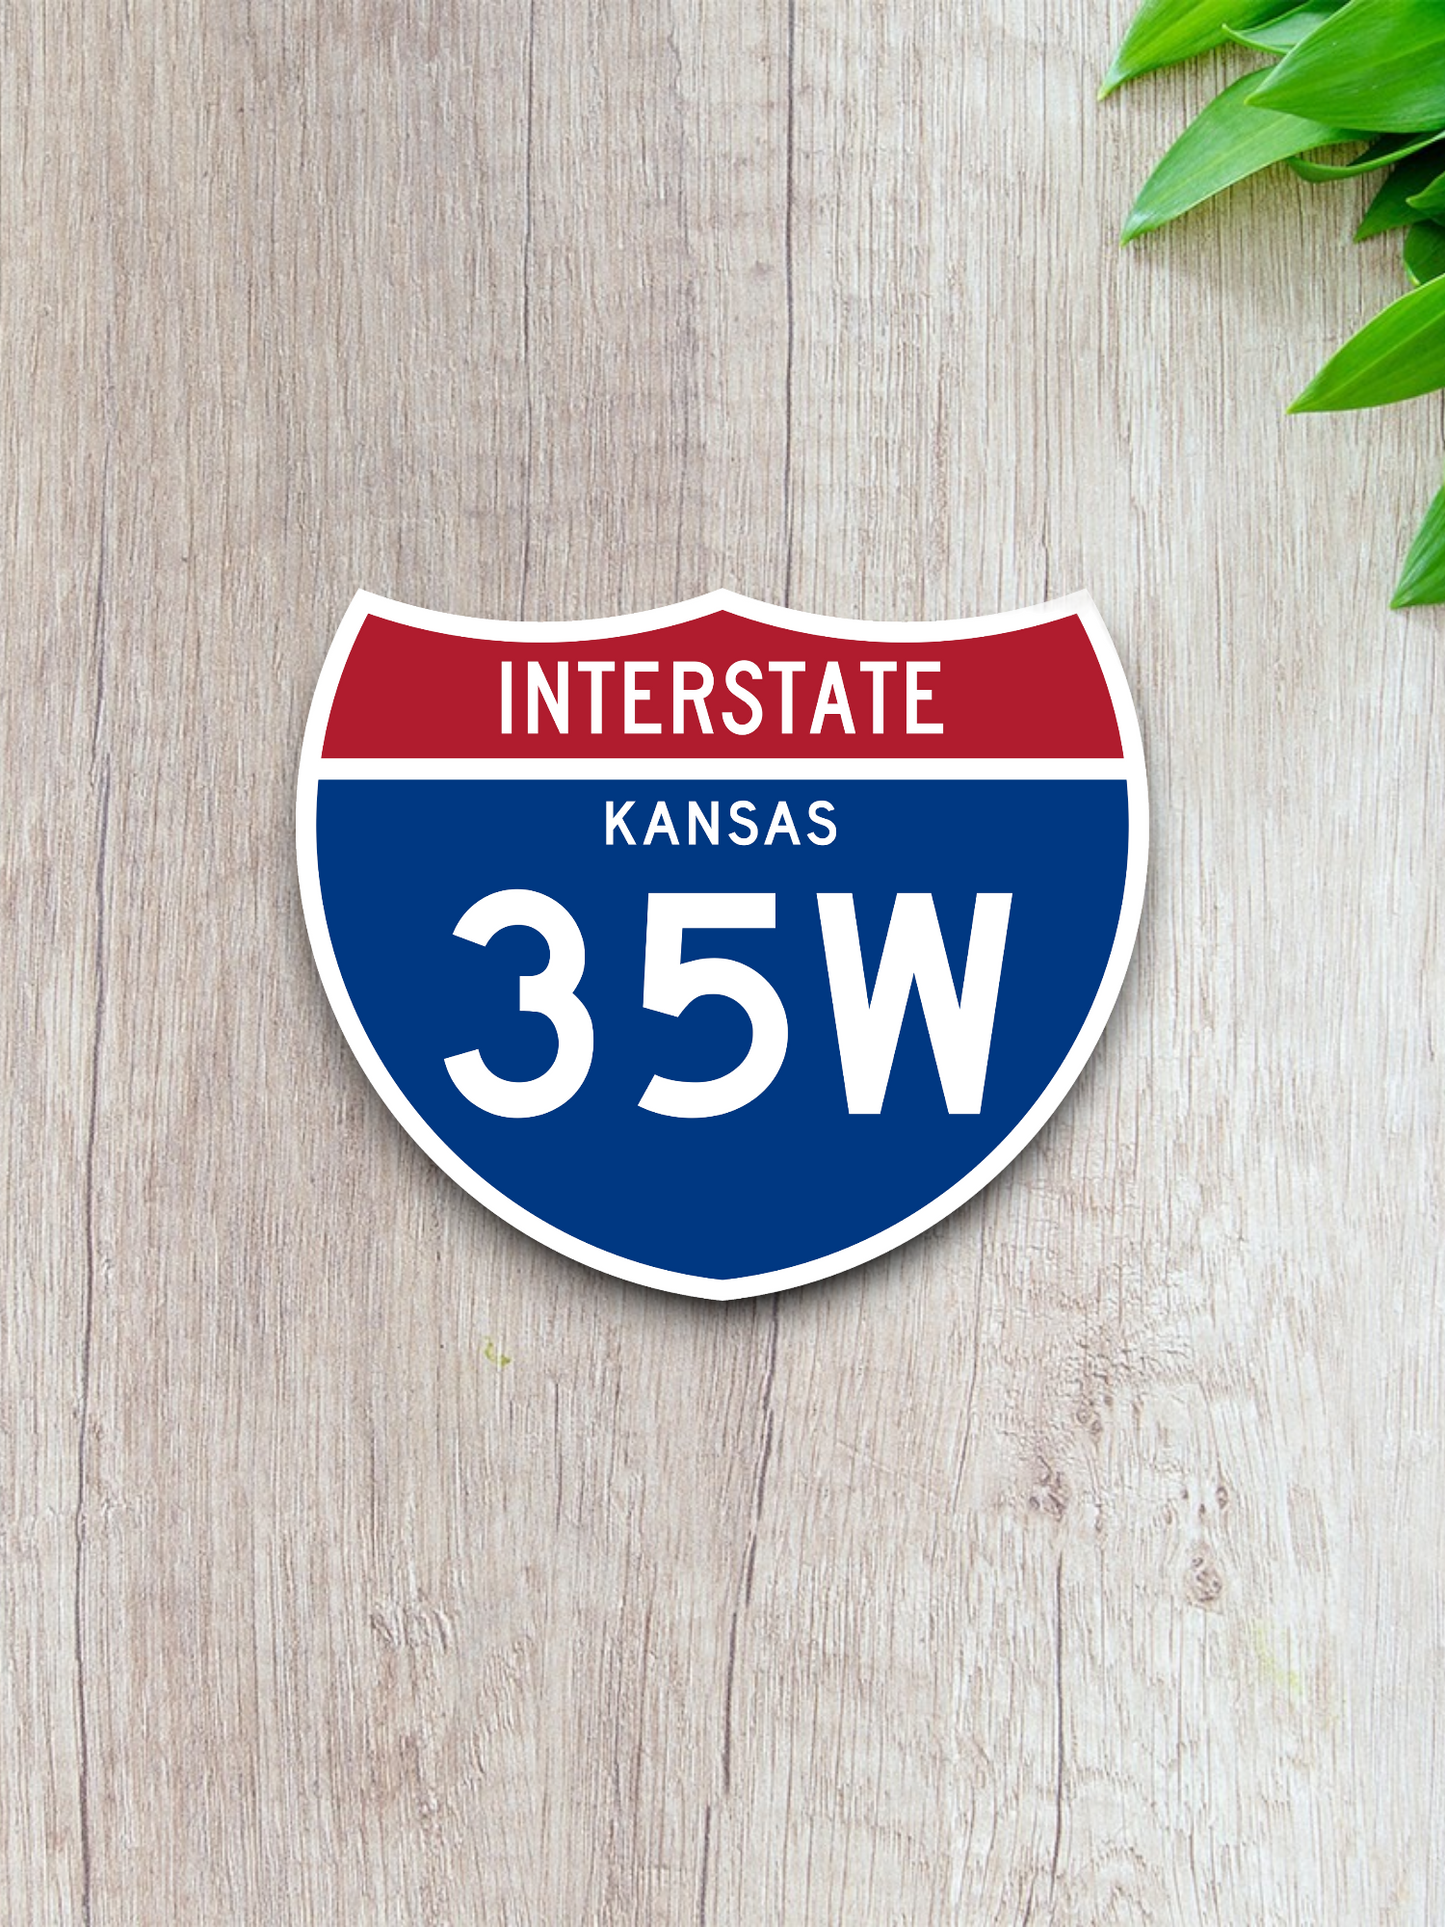 Interstate I-35W Kansas - Road Sign Sticker